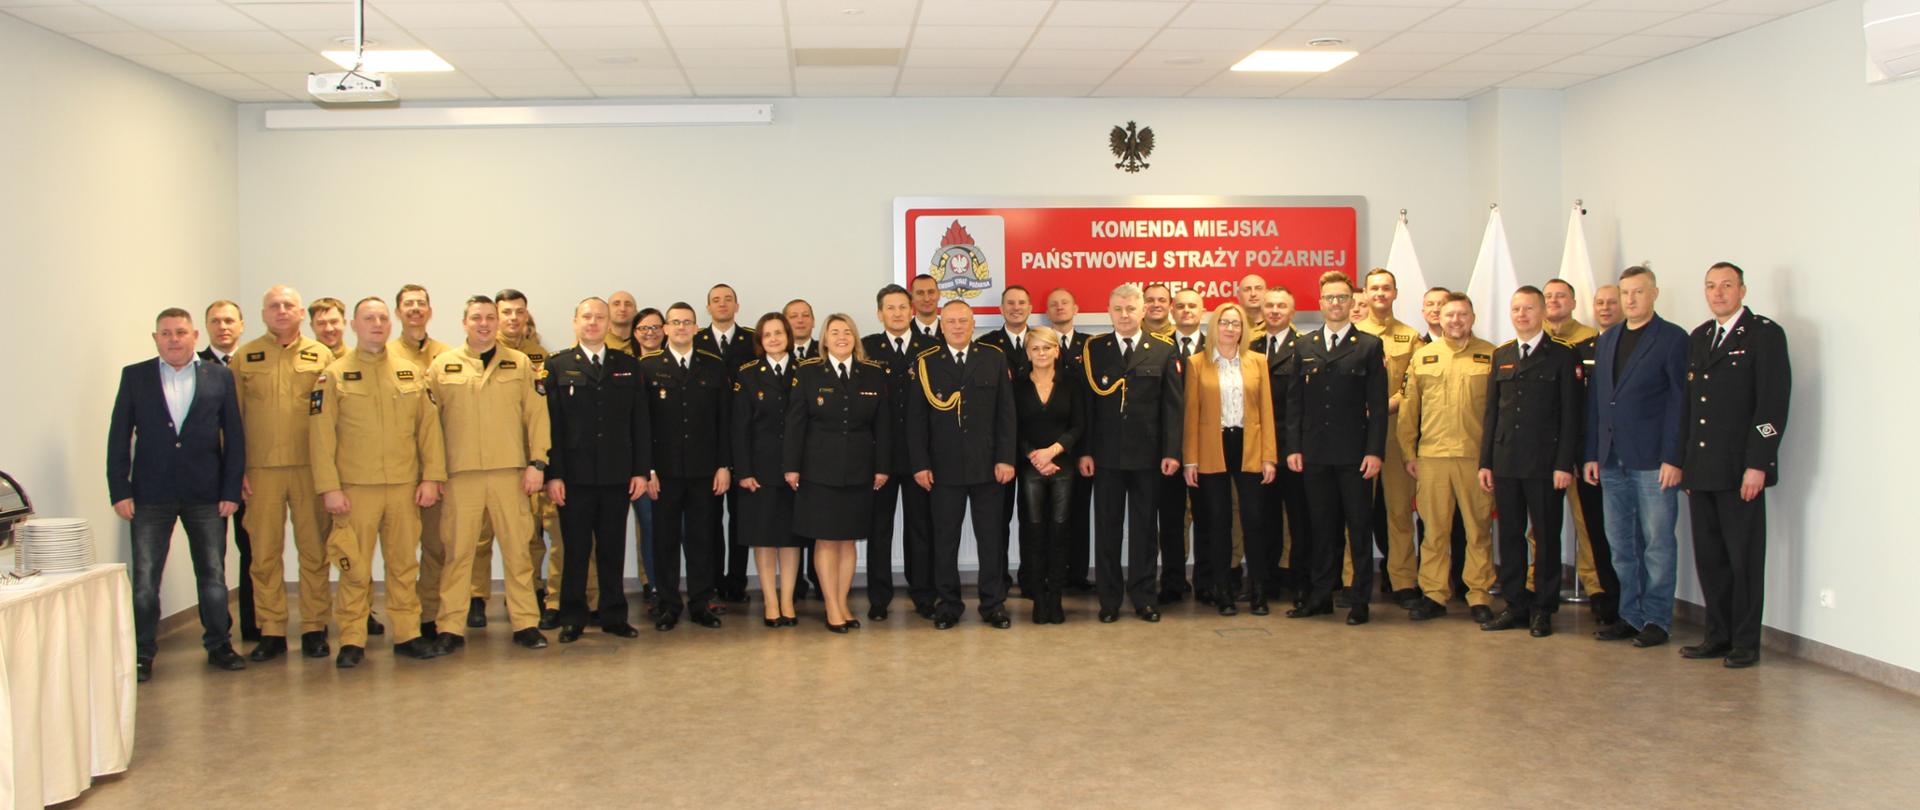 Pamiątkowe zdjęcie: funkcjonariusze i pracownicy Komendy Miejskiej Państwowej Straży Pożarnej w Kielcach. W pierwszym rzędzie stoją w centralnym punkcie odchodzący na emeryturę strażacy.